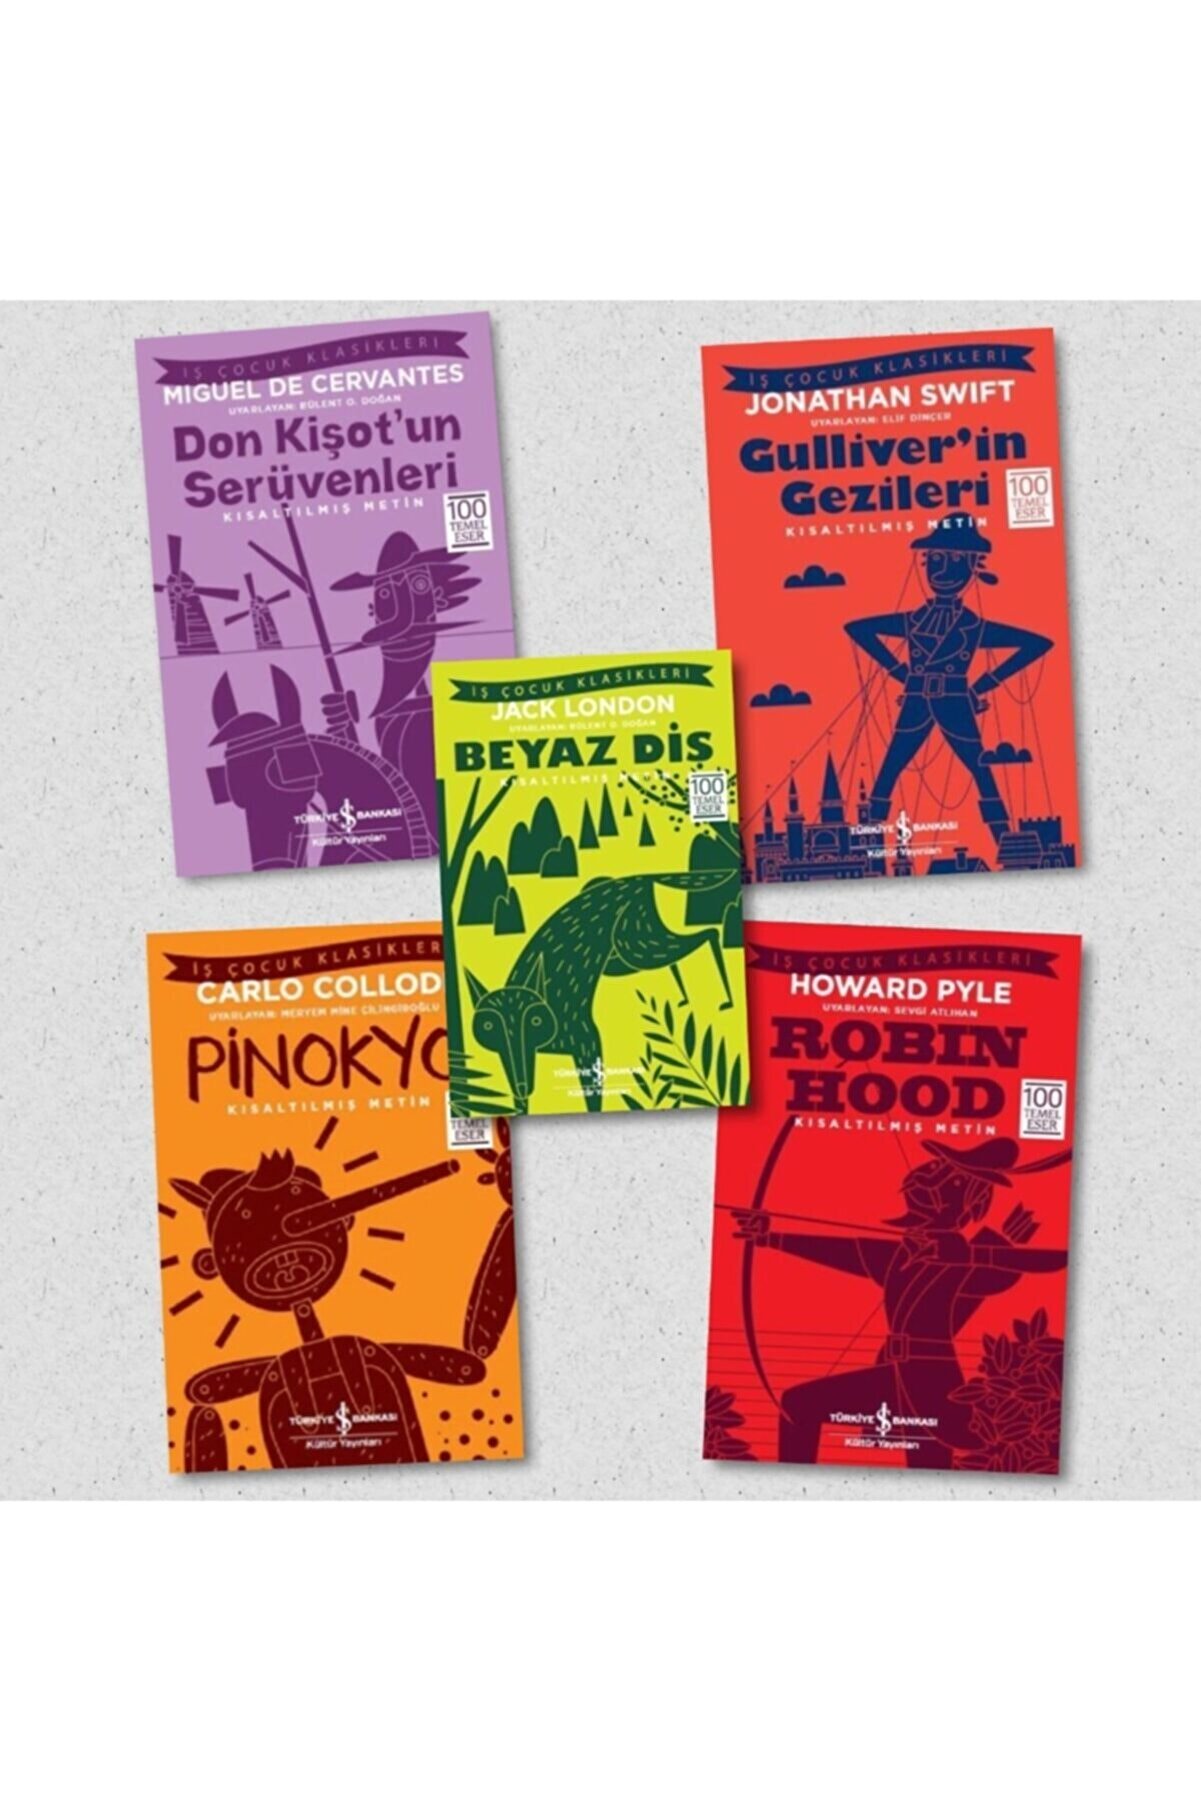 İş Bankası Kültür Yayınları Don Kişot'un Serüvenleri - Gulliver'in Gezileri - Beyaz Diş - Pinokyo - Robin Hood, 5 Kitap